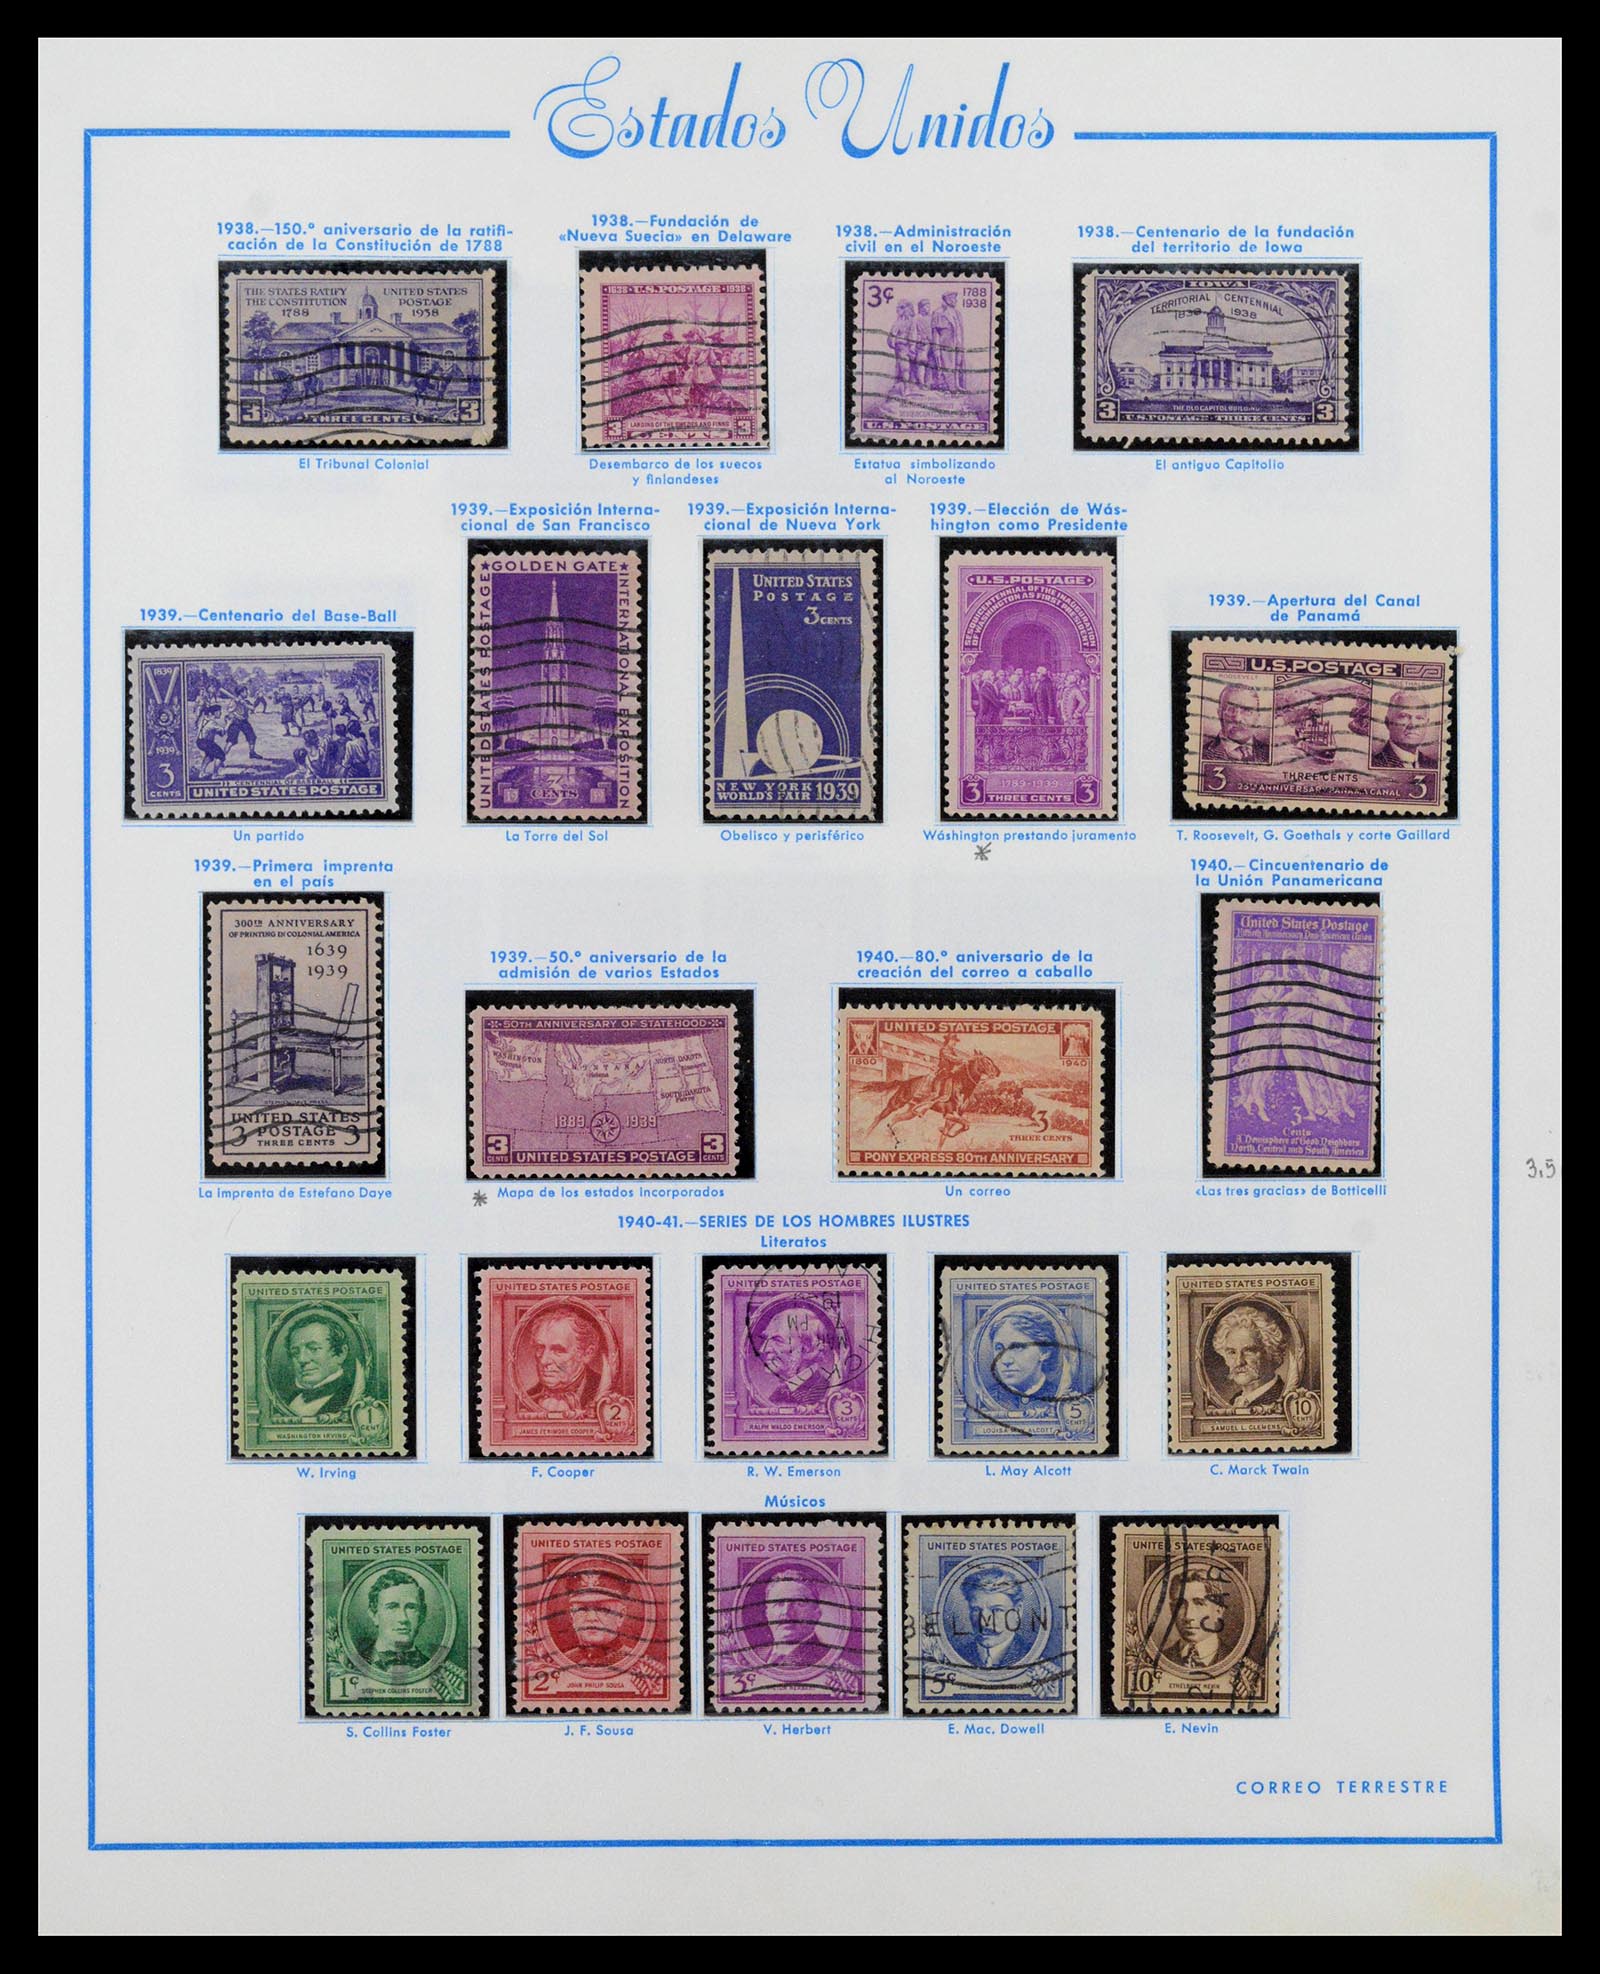 39190 0022 - Stamp collection 39190 USA 1851-1975.